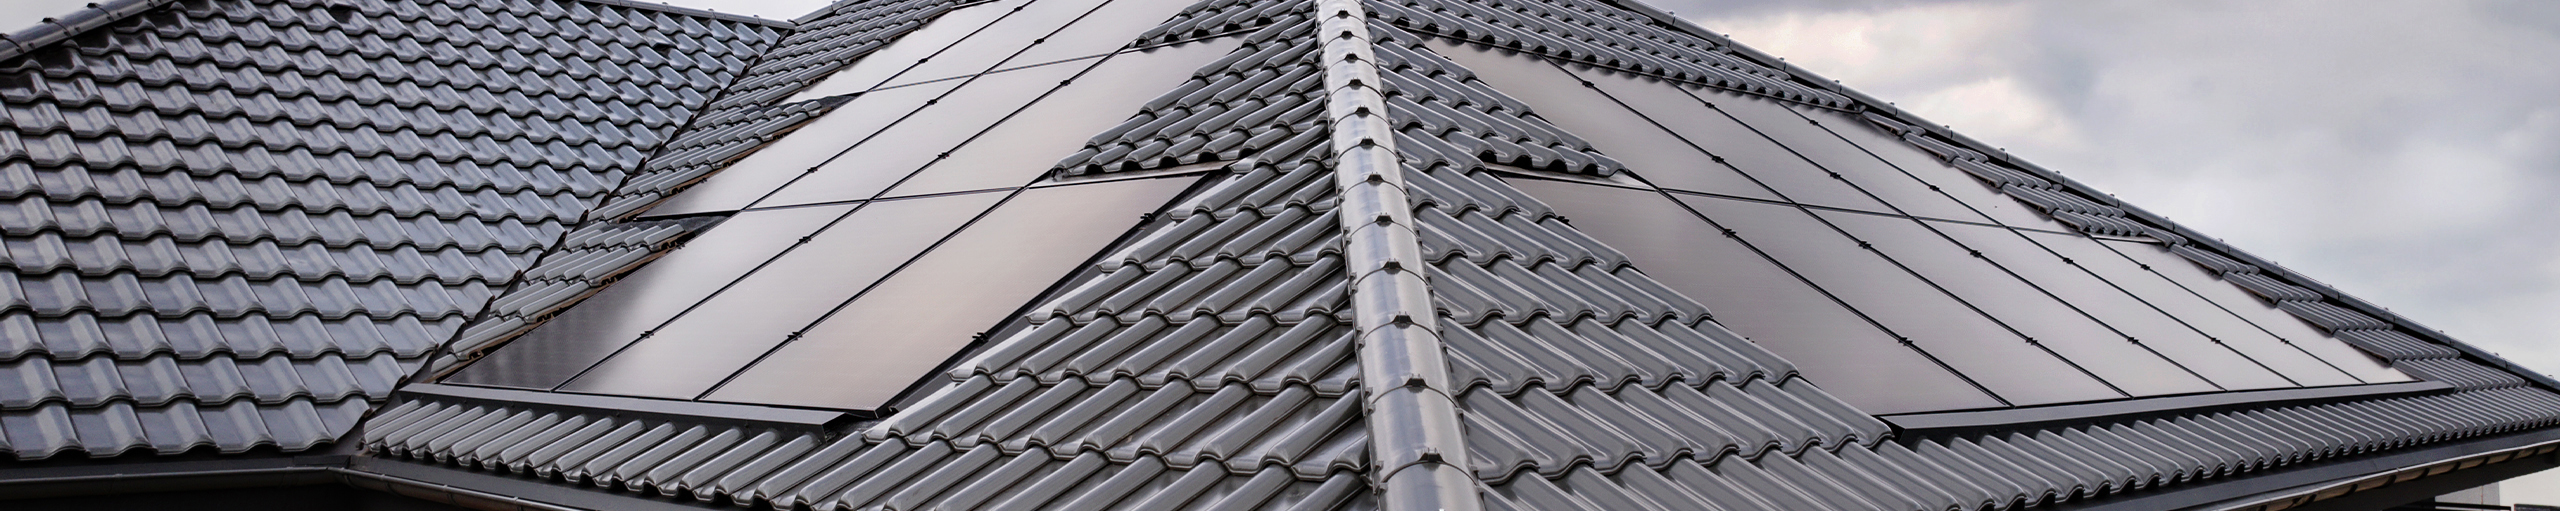 Zintegrowany dach fotowoltaiczny VARIO to doskonałe rozwiązanie dla nowoczesnego domu